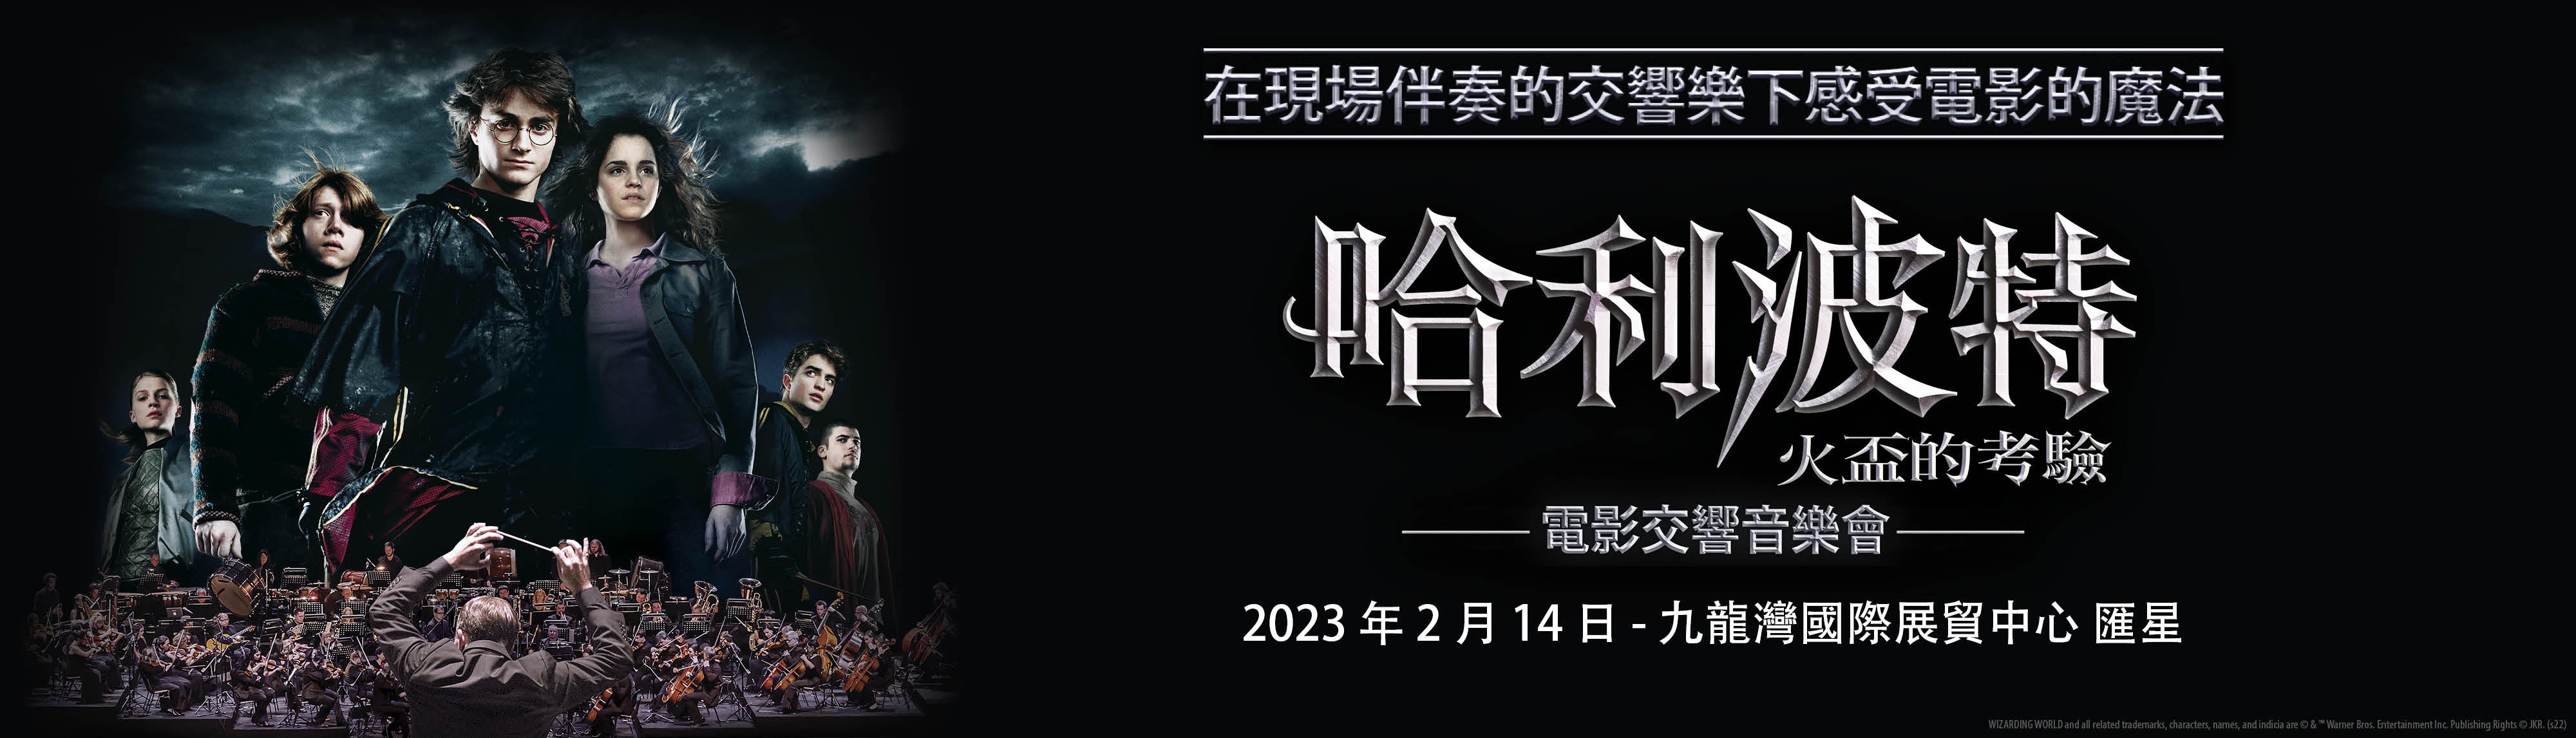 20220329 HP4 HK Web LFS CN2